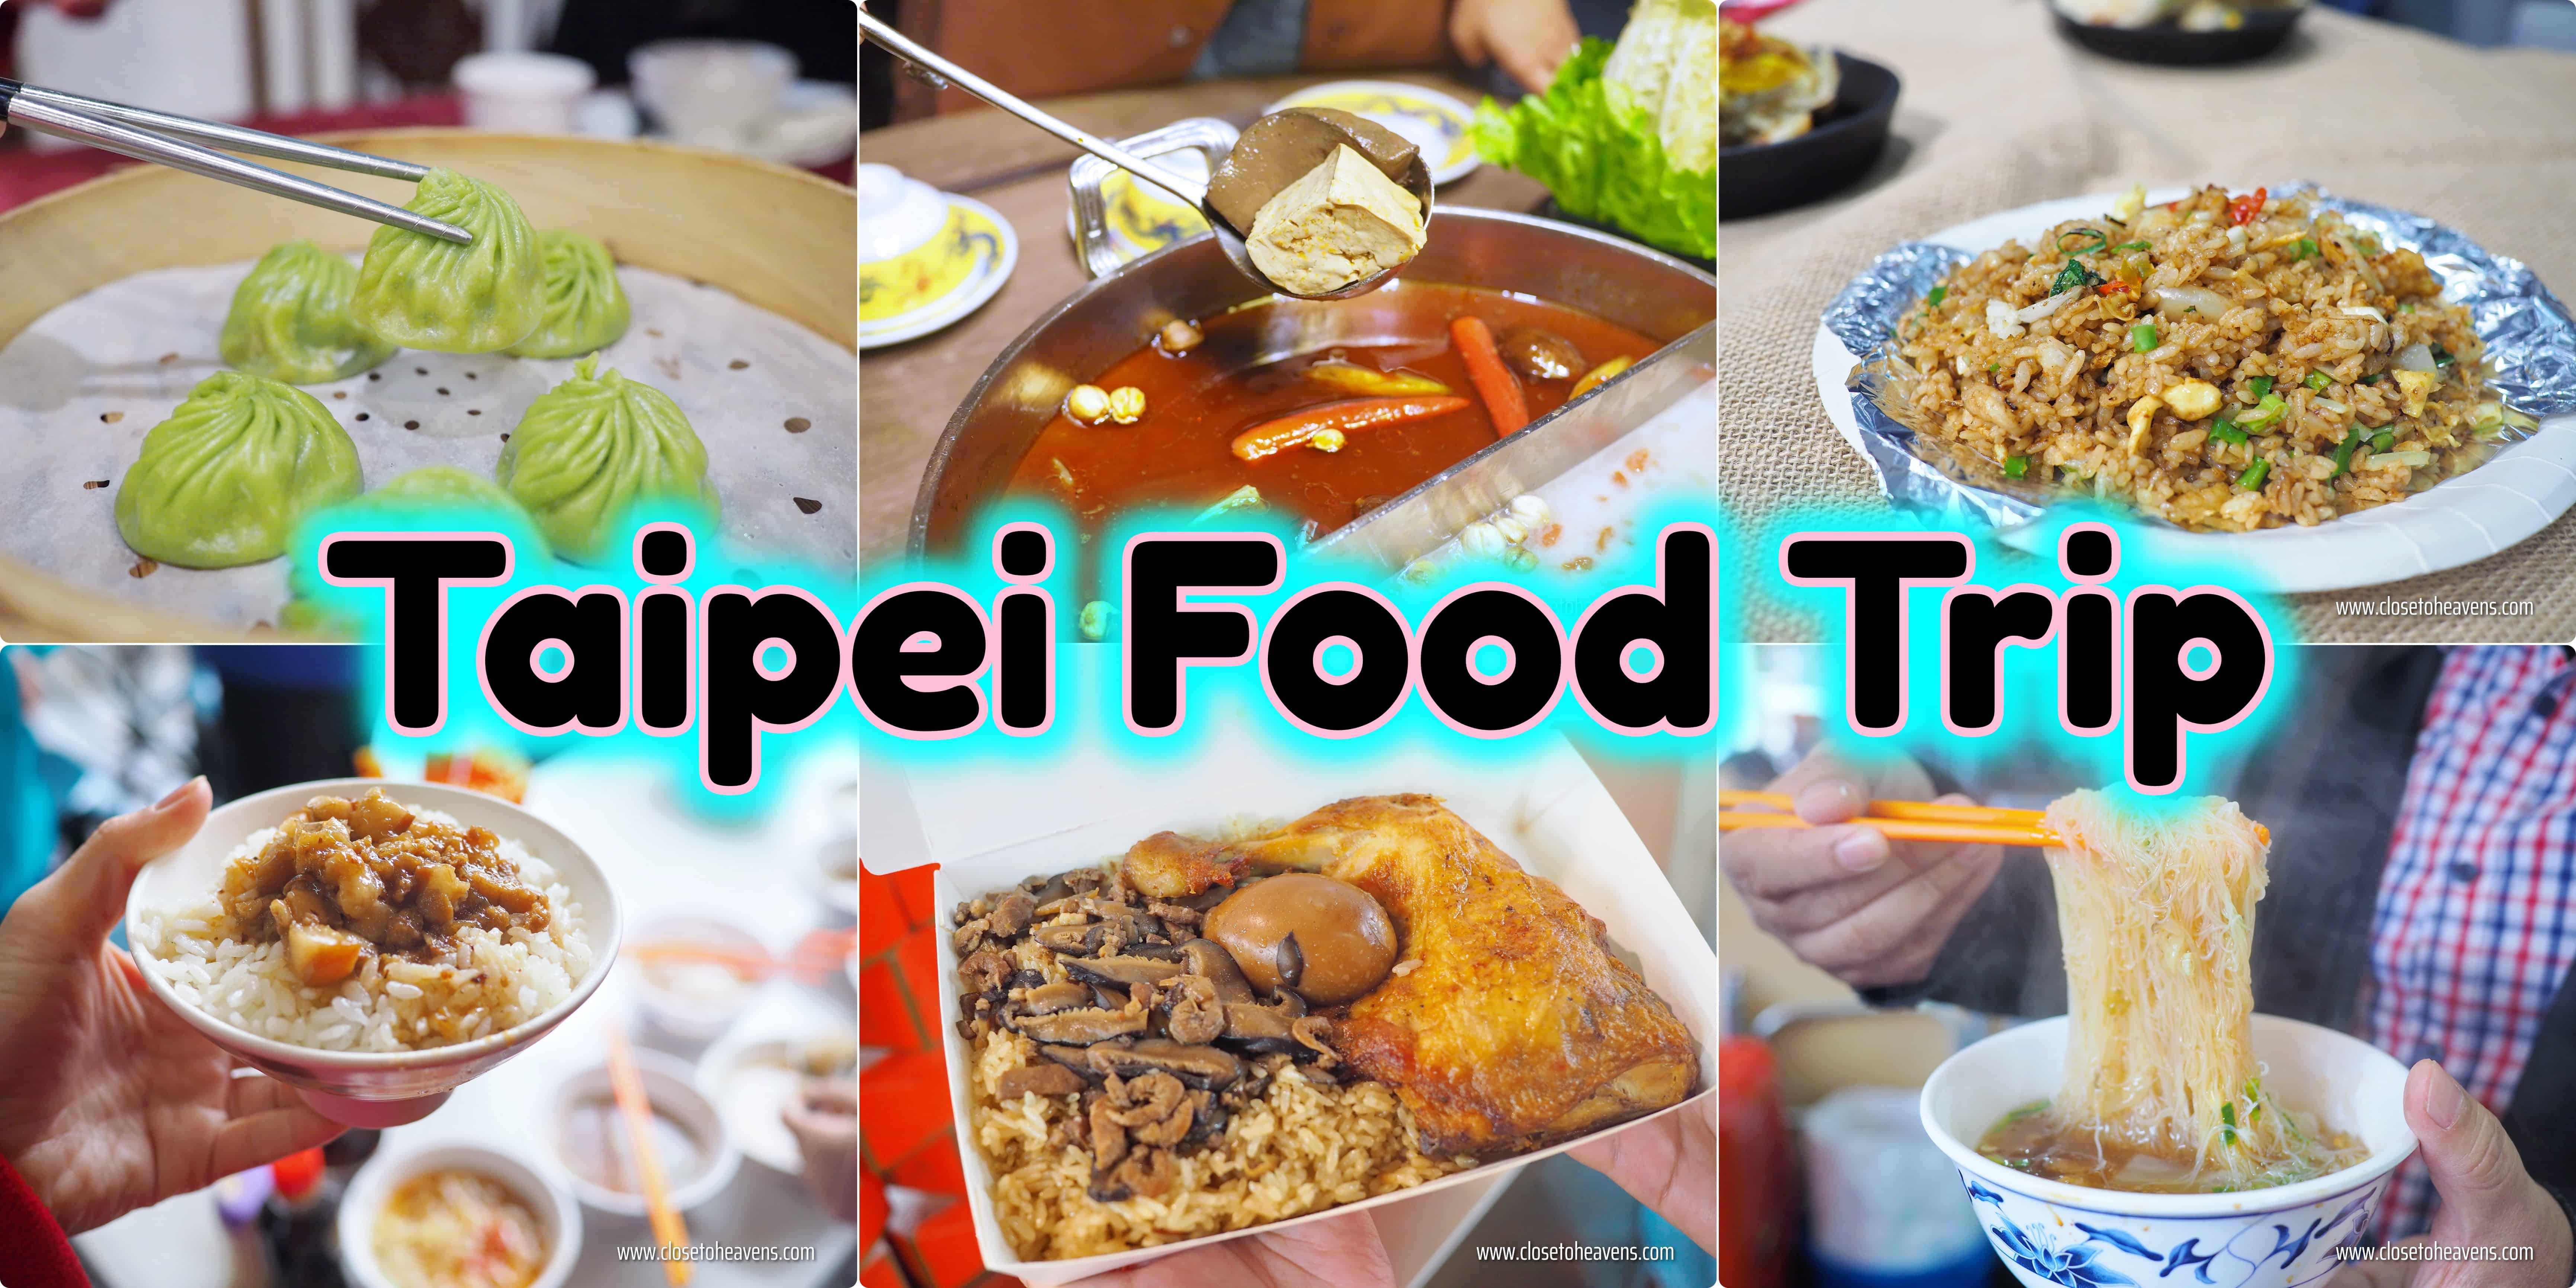 เที่ยวไต้หวัน #1 ตะลุยกิน อาหารท้องถิ่น street food เมืองไทเป